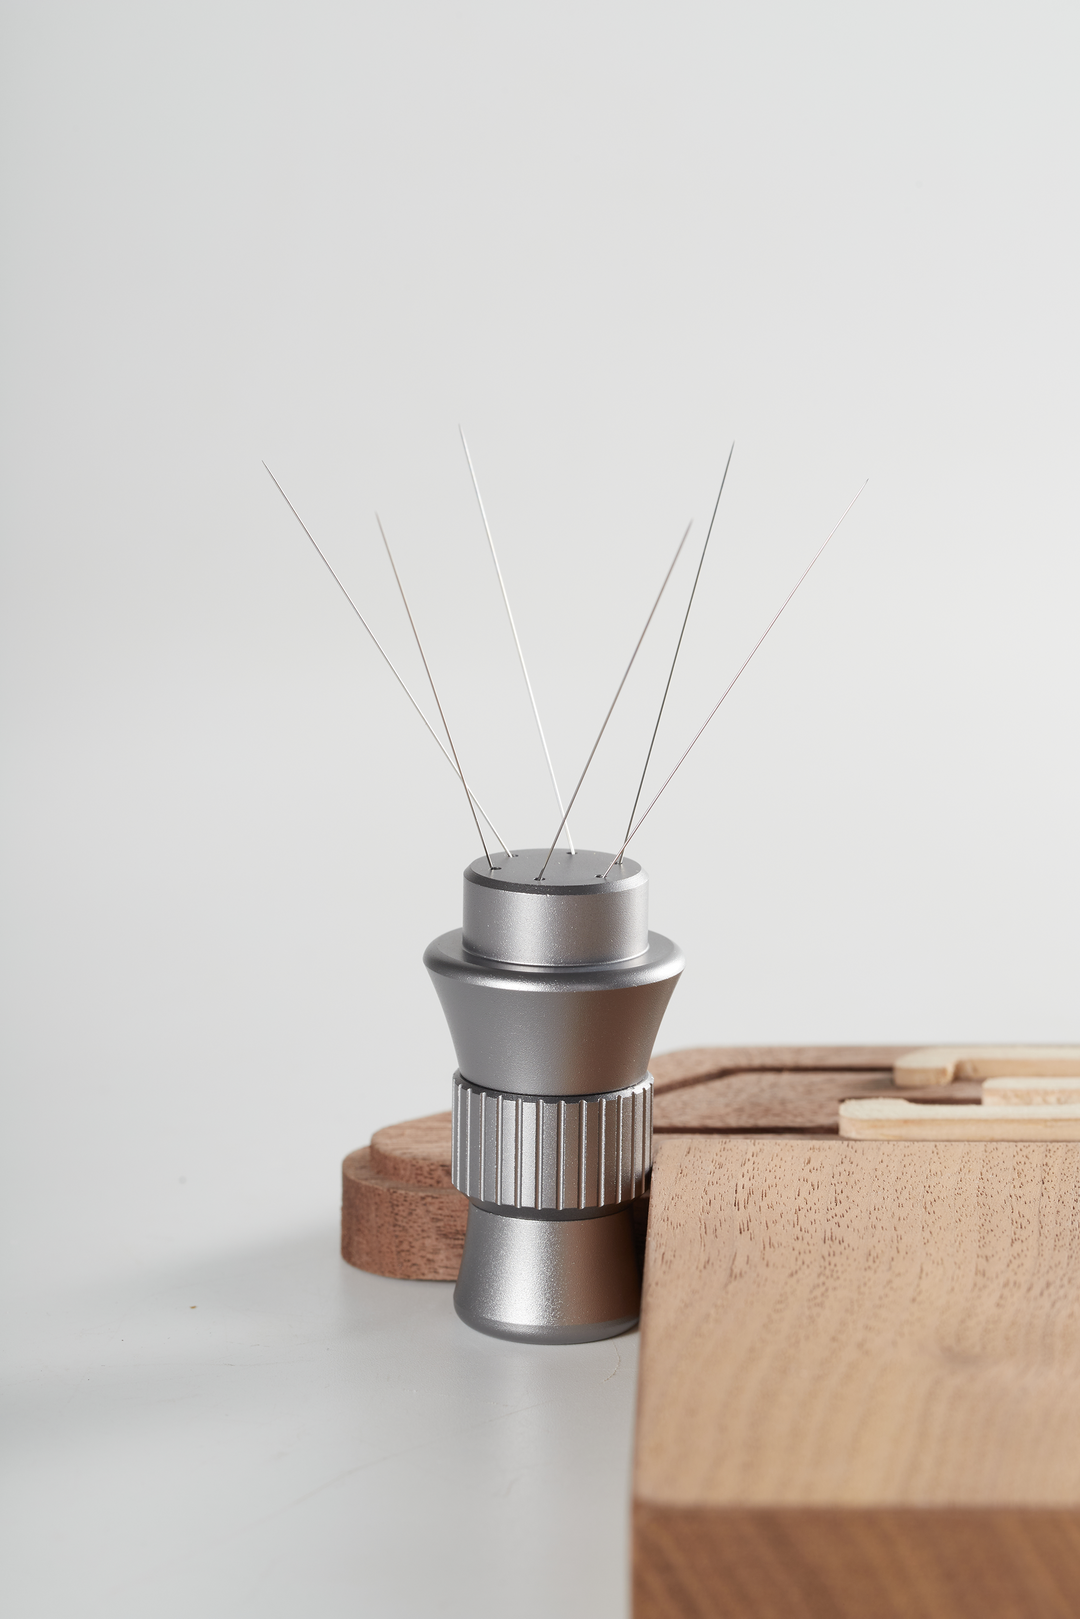 Best Adjustable Espresso Stirrer for 58mm basket - IVYKIN